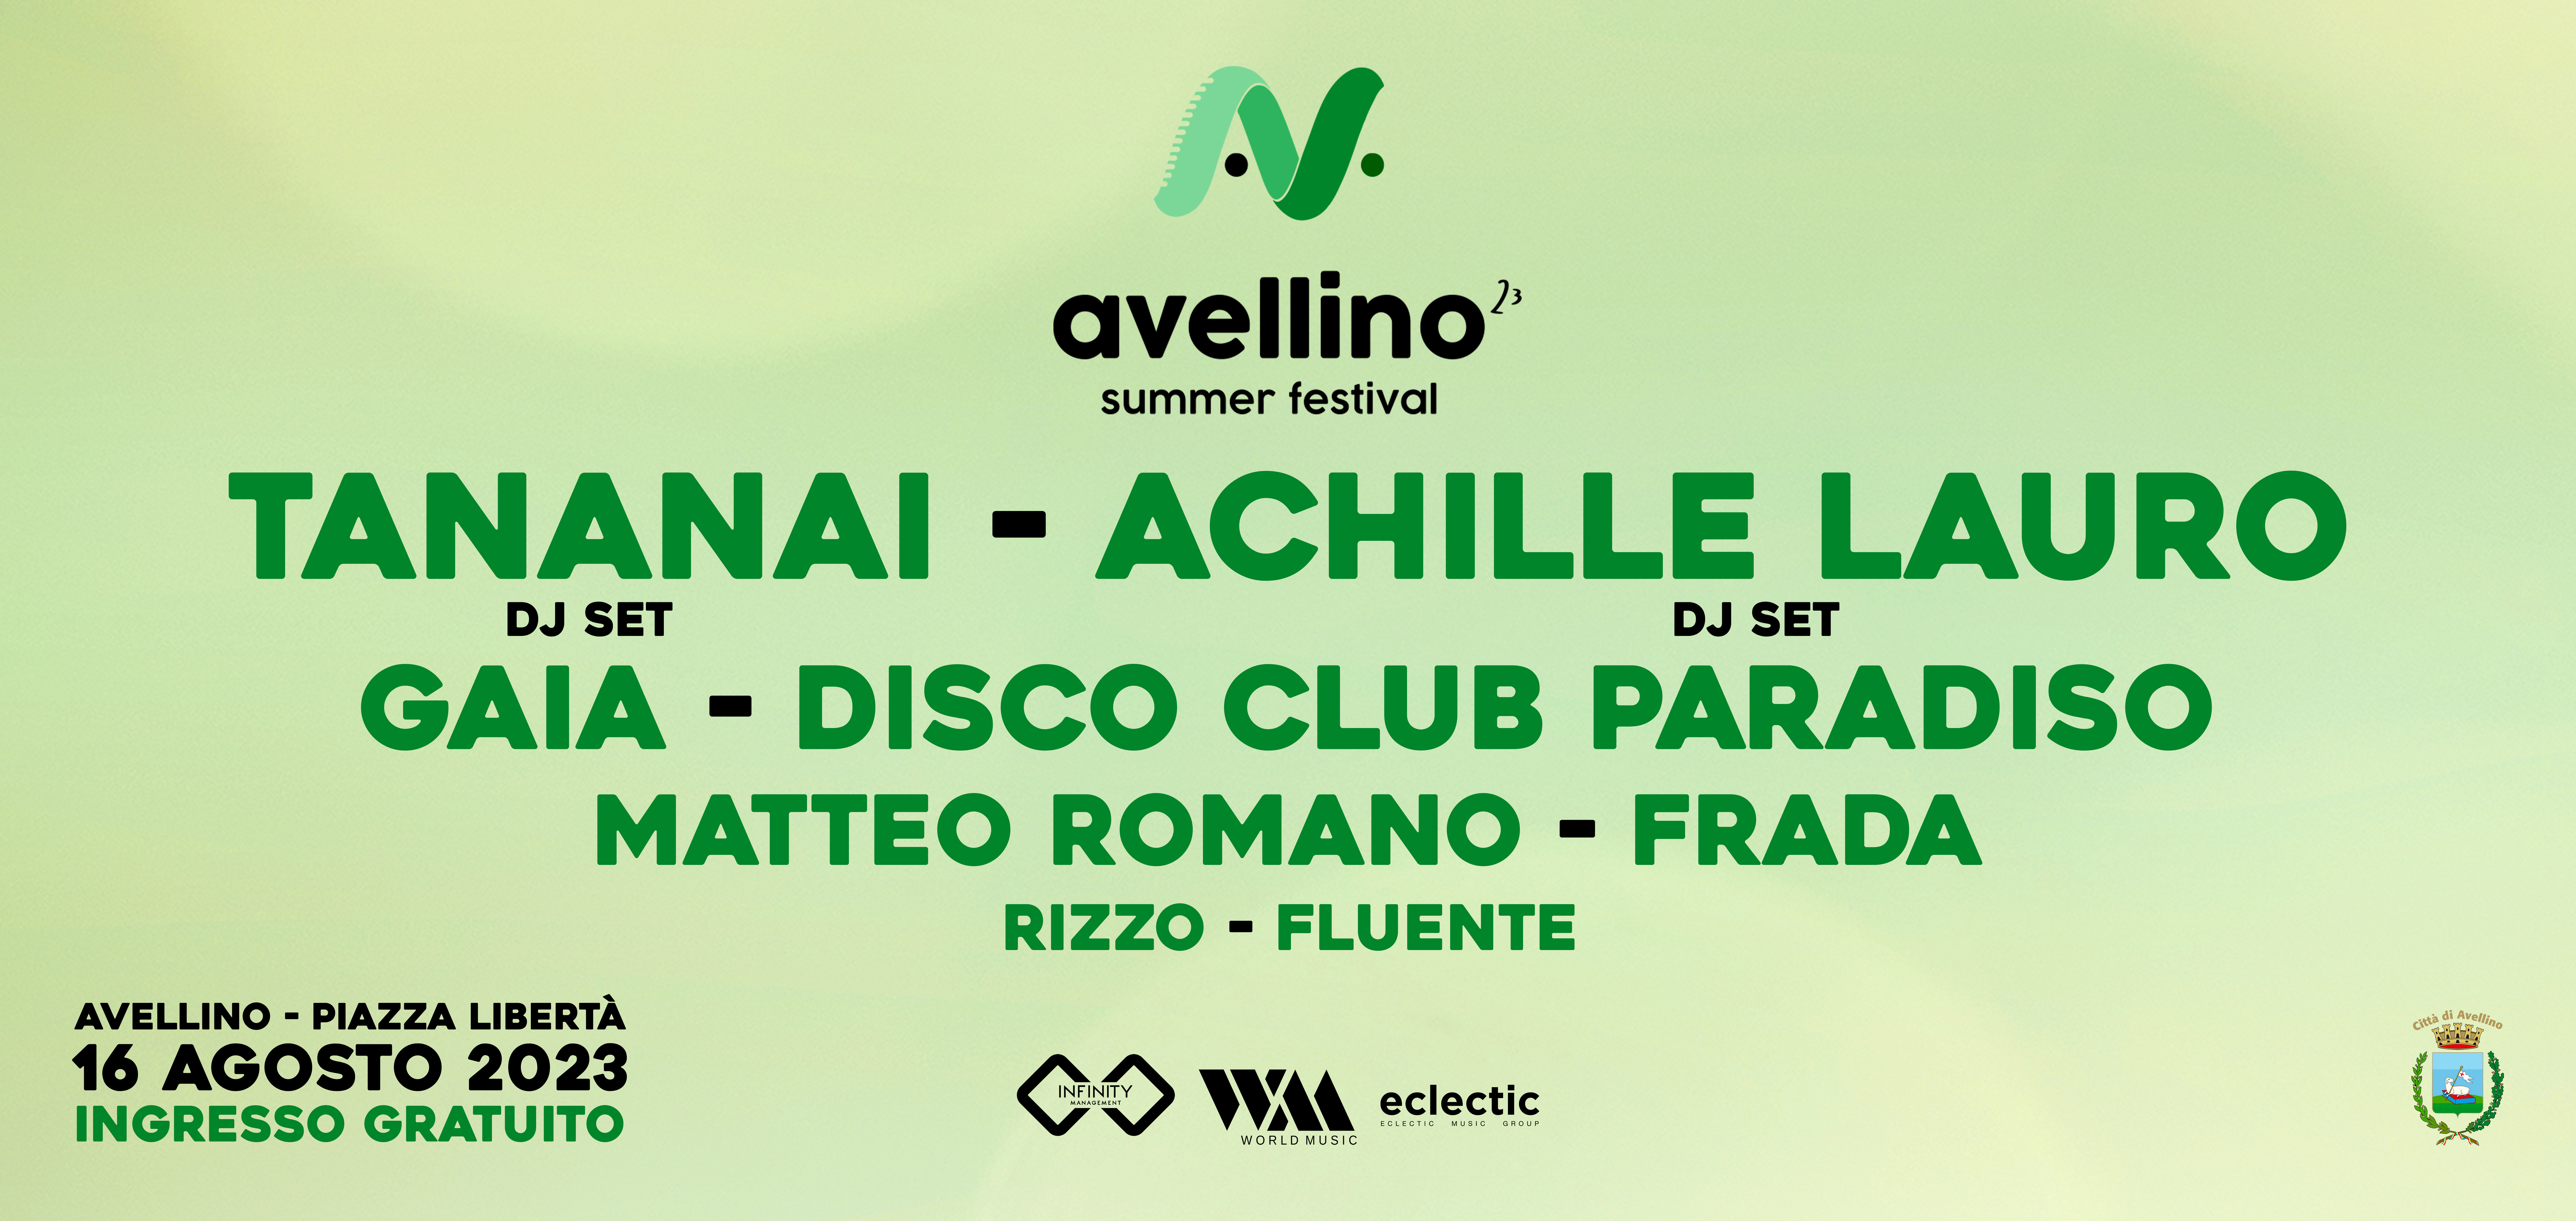 Avellino Summer Festival, grande attesa per l’evento di mercoledì. Per ogni artista un live di 30 minuti